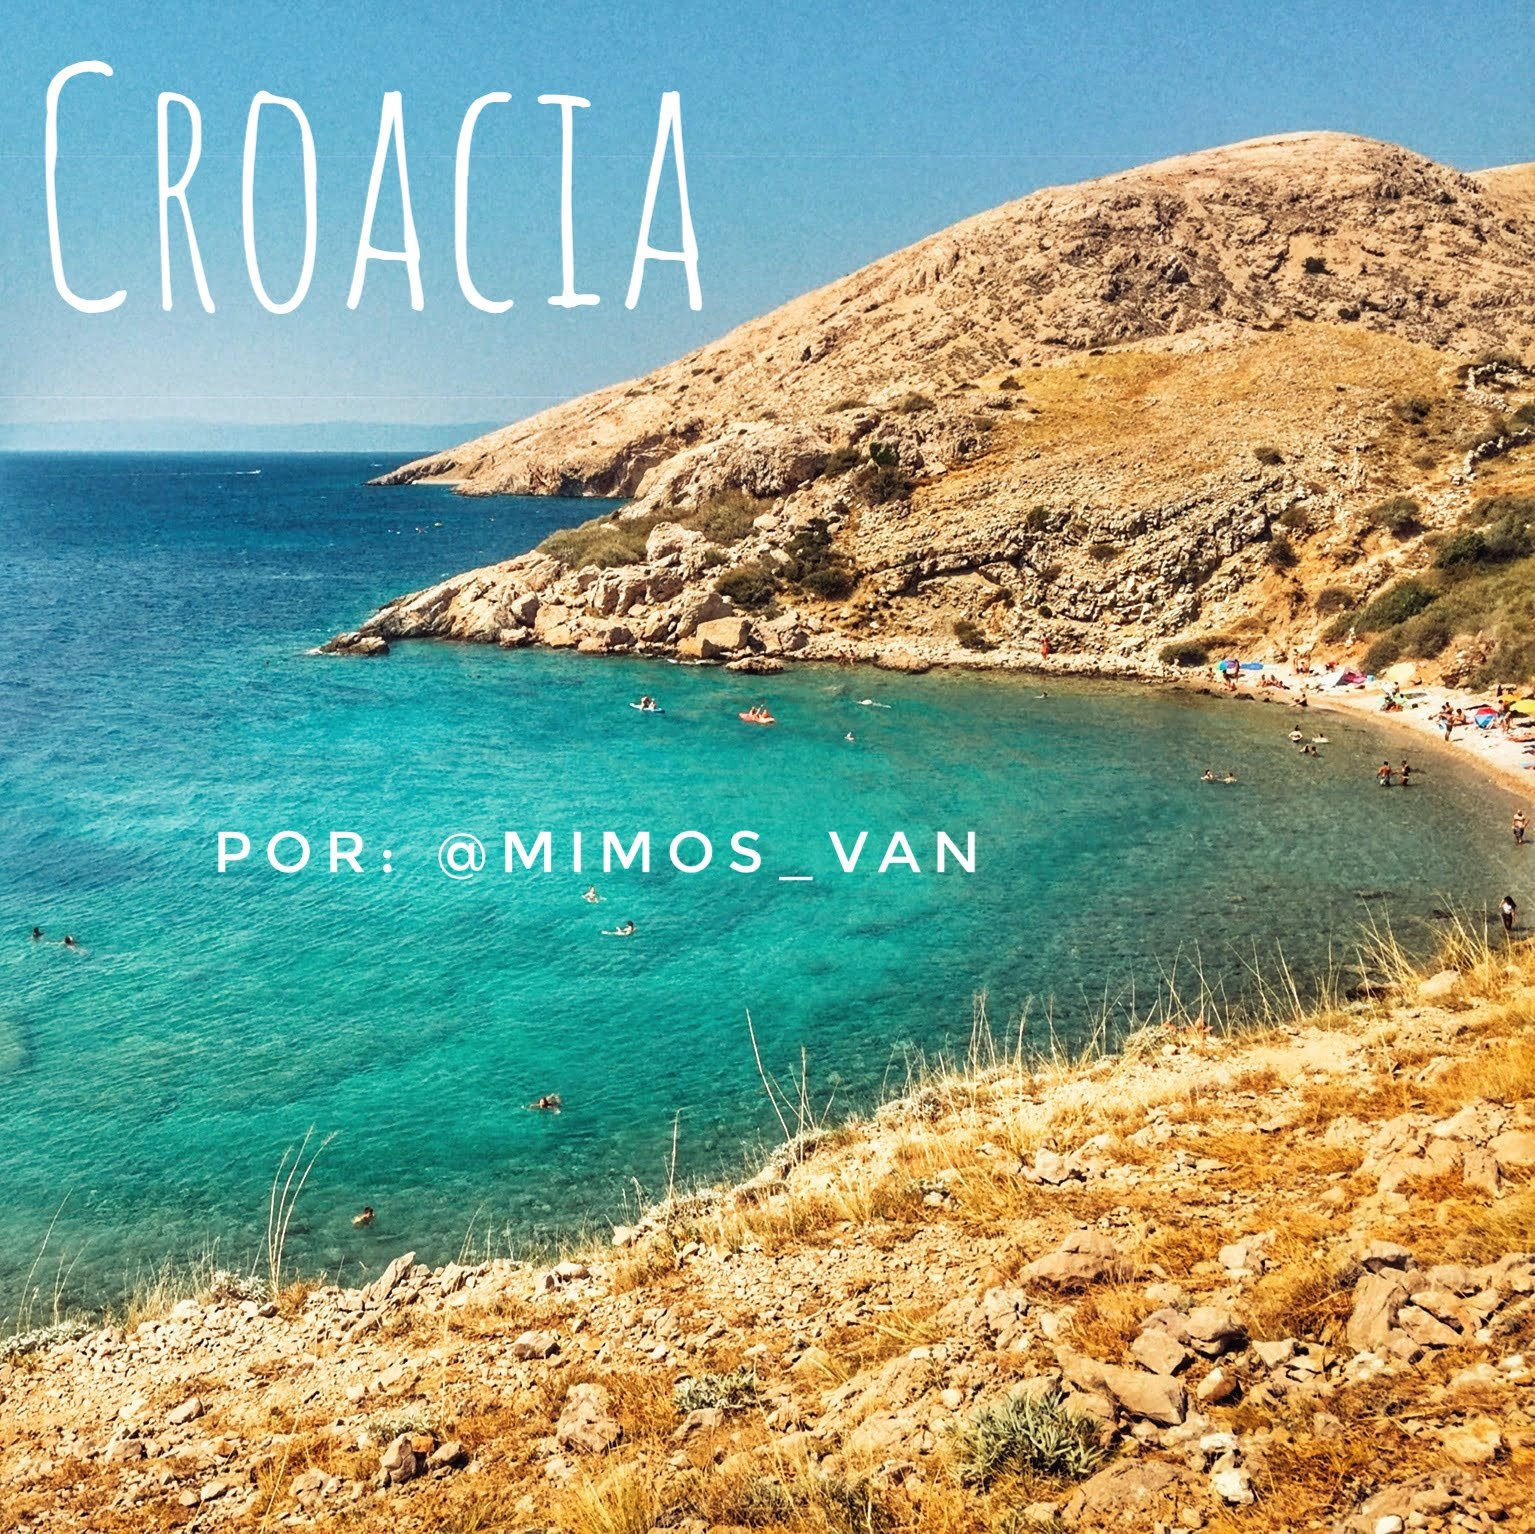 Leggi di più sull'articolo 7 giorni in Croazia in camper o furgone di @mimosvan